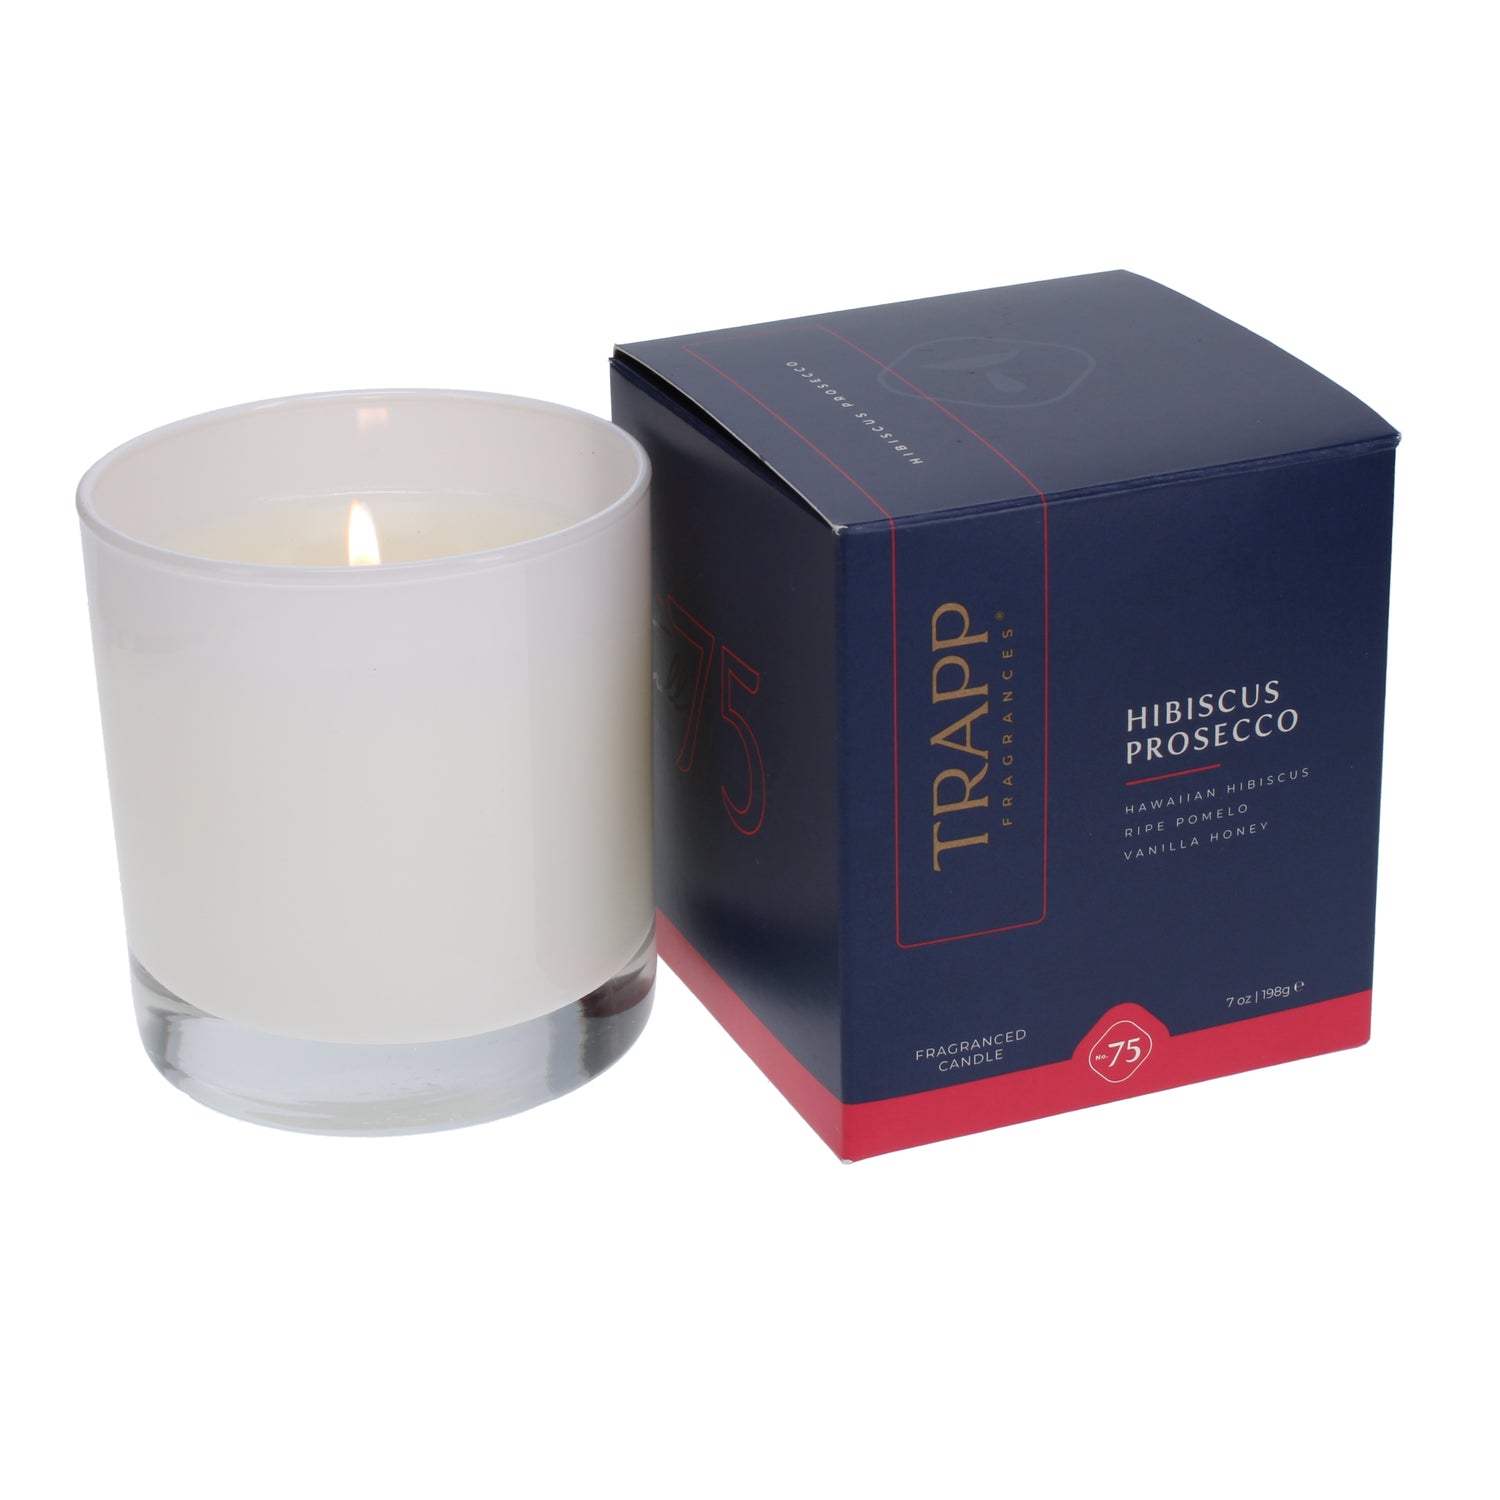 No. 75 Hibiscus Prosecco 7 oz. Candle in Signature Box – Trapp Fragrances